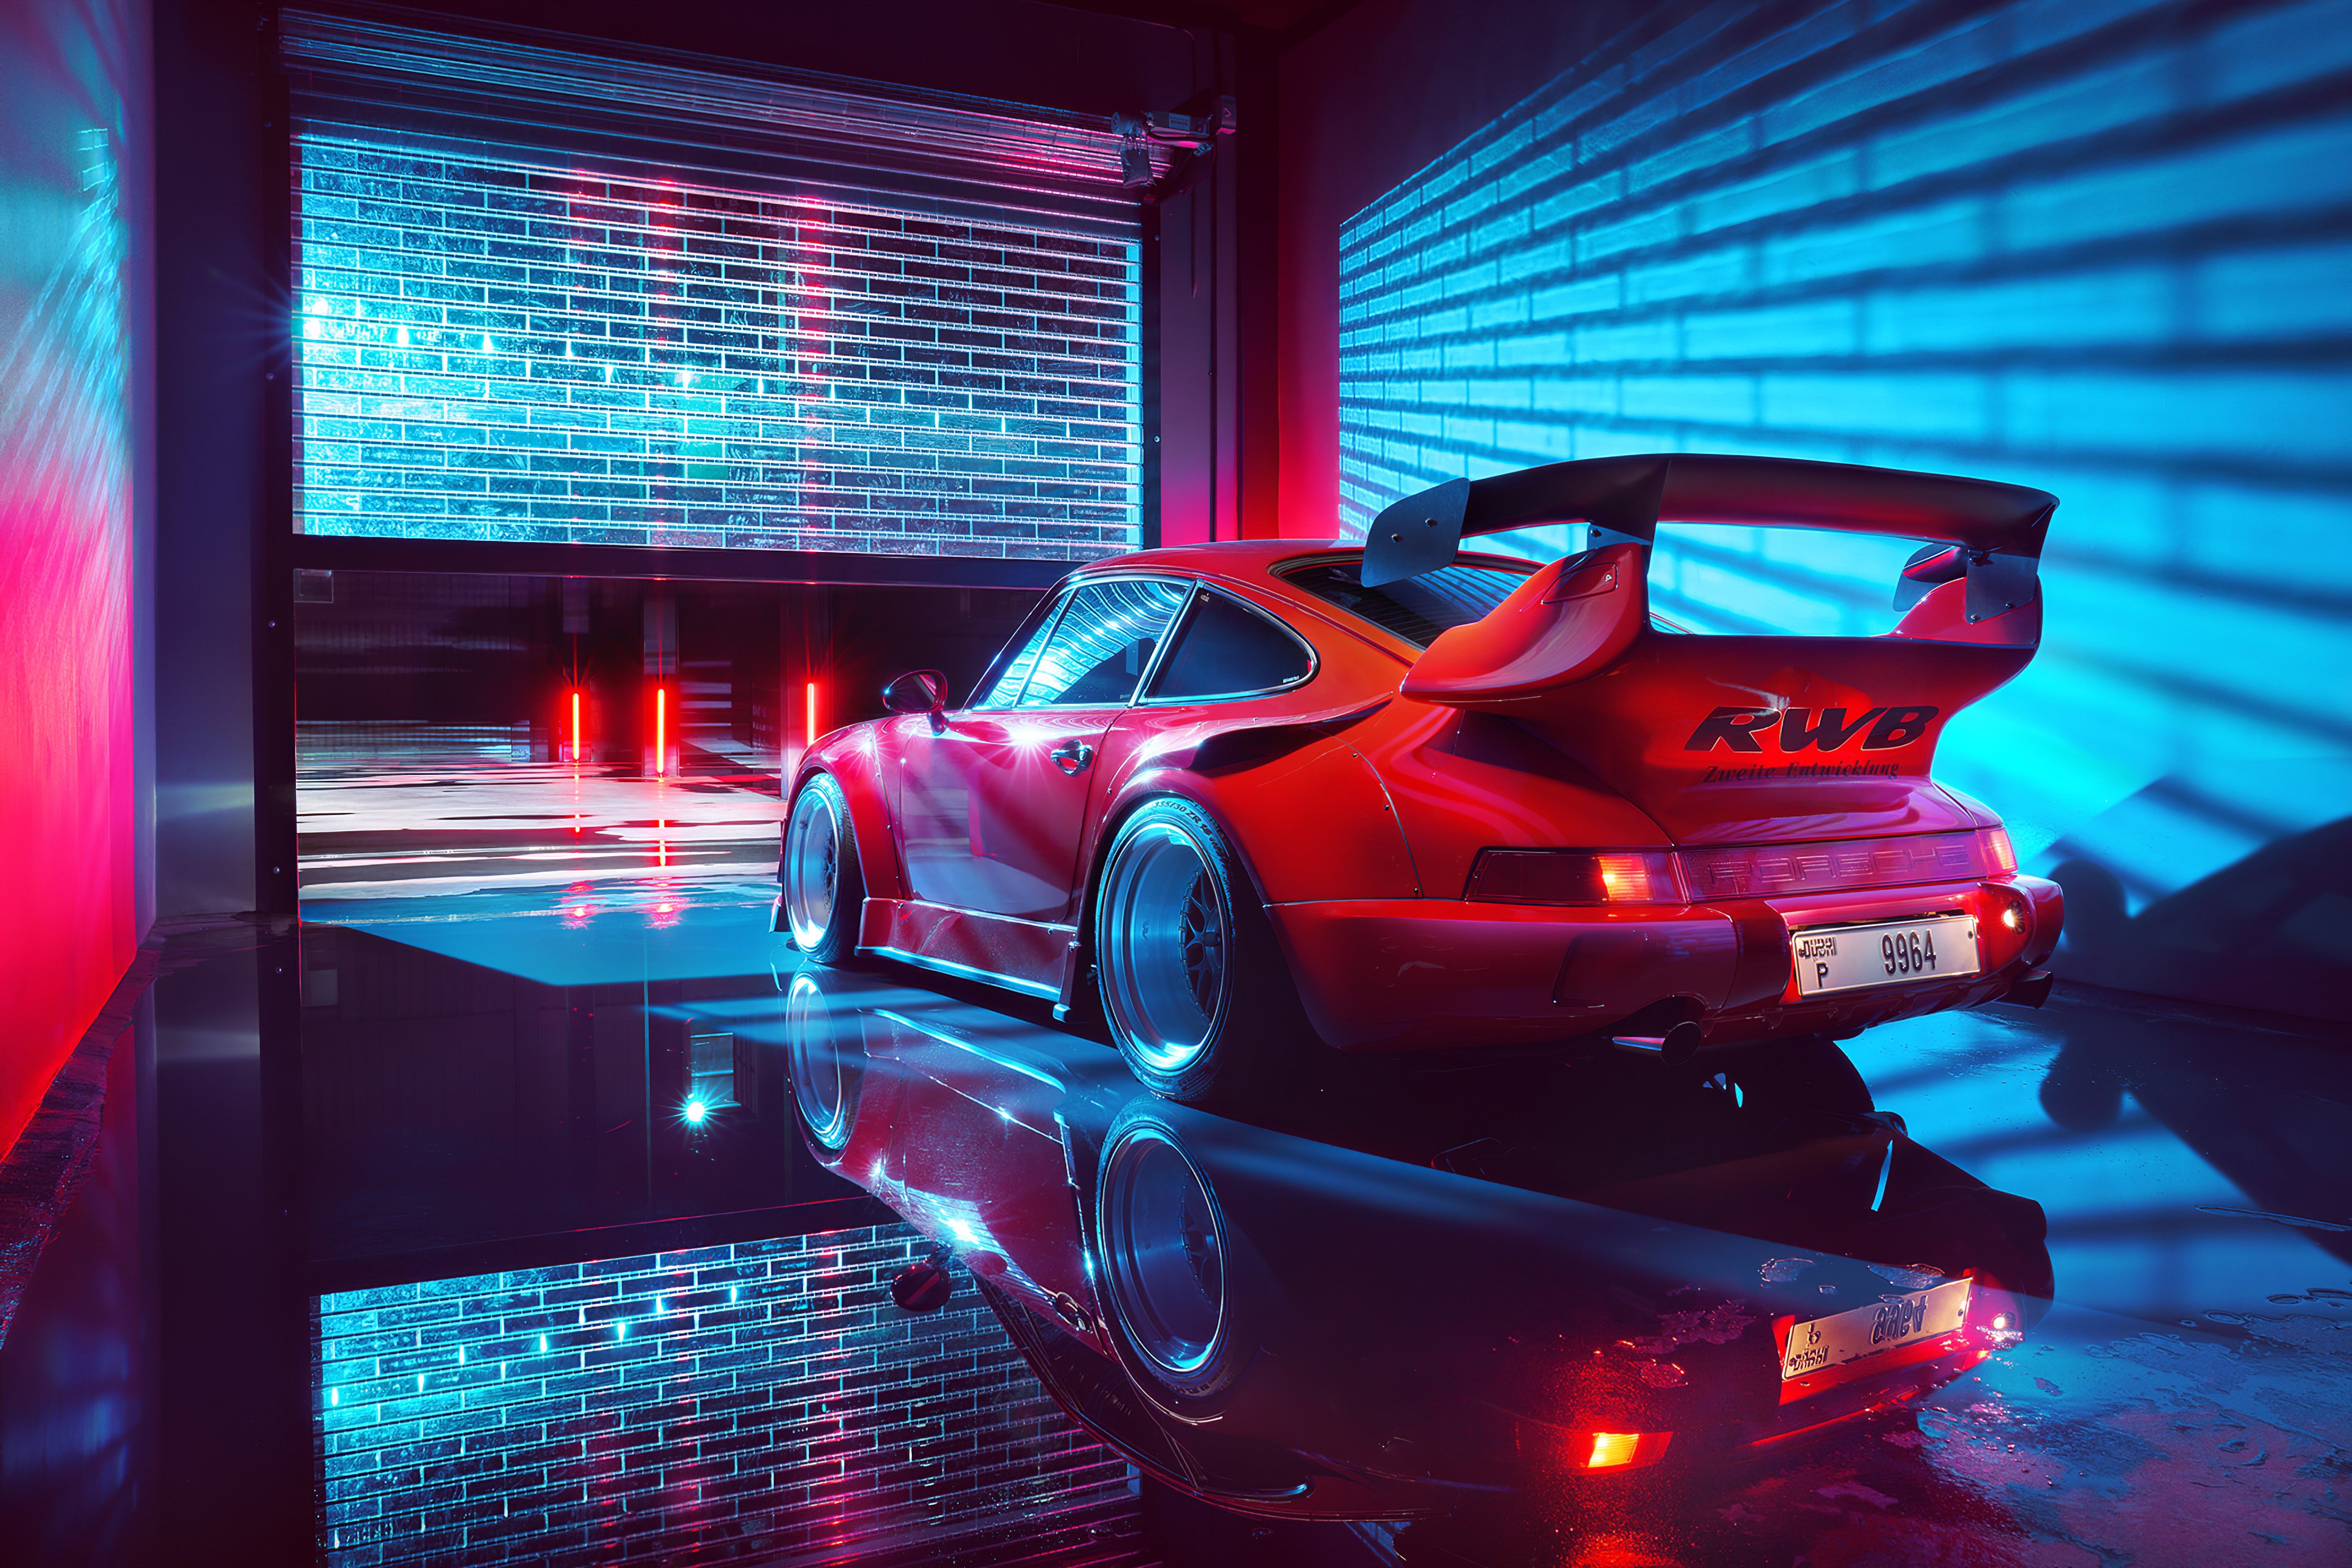 Fondos de pantalla Porsche rojo